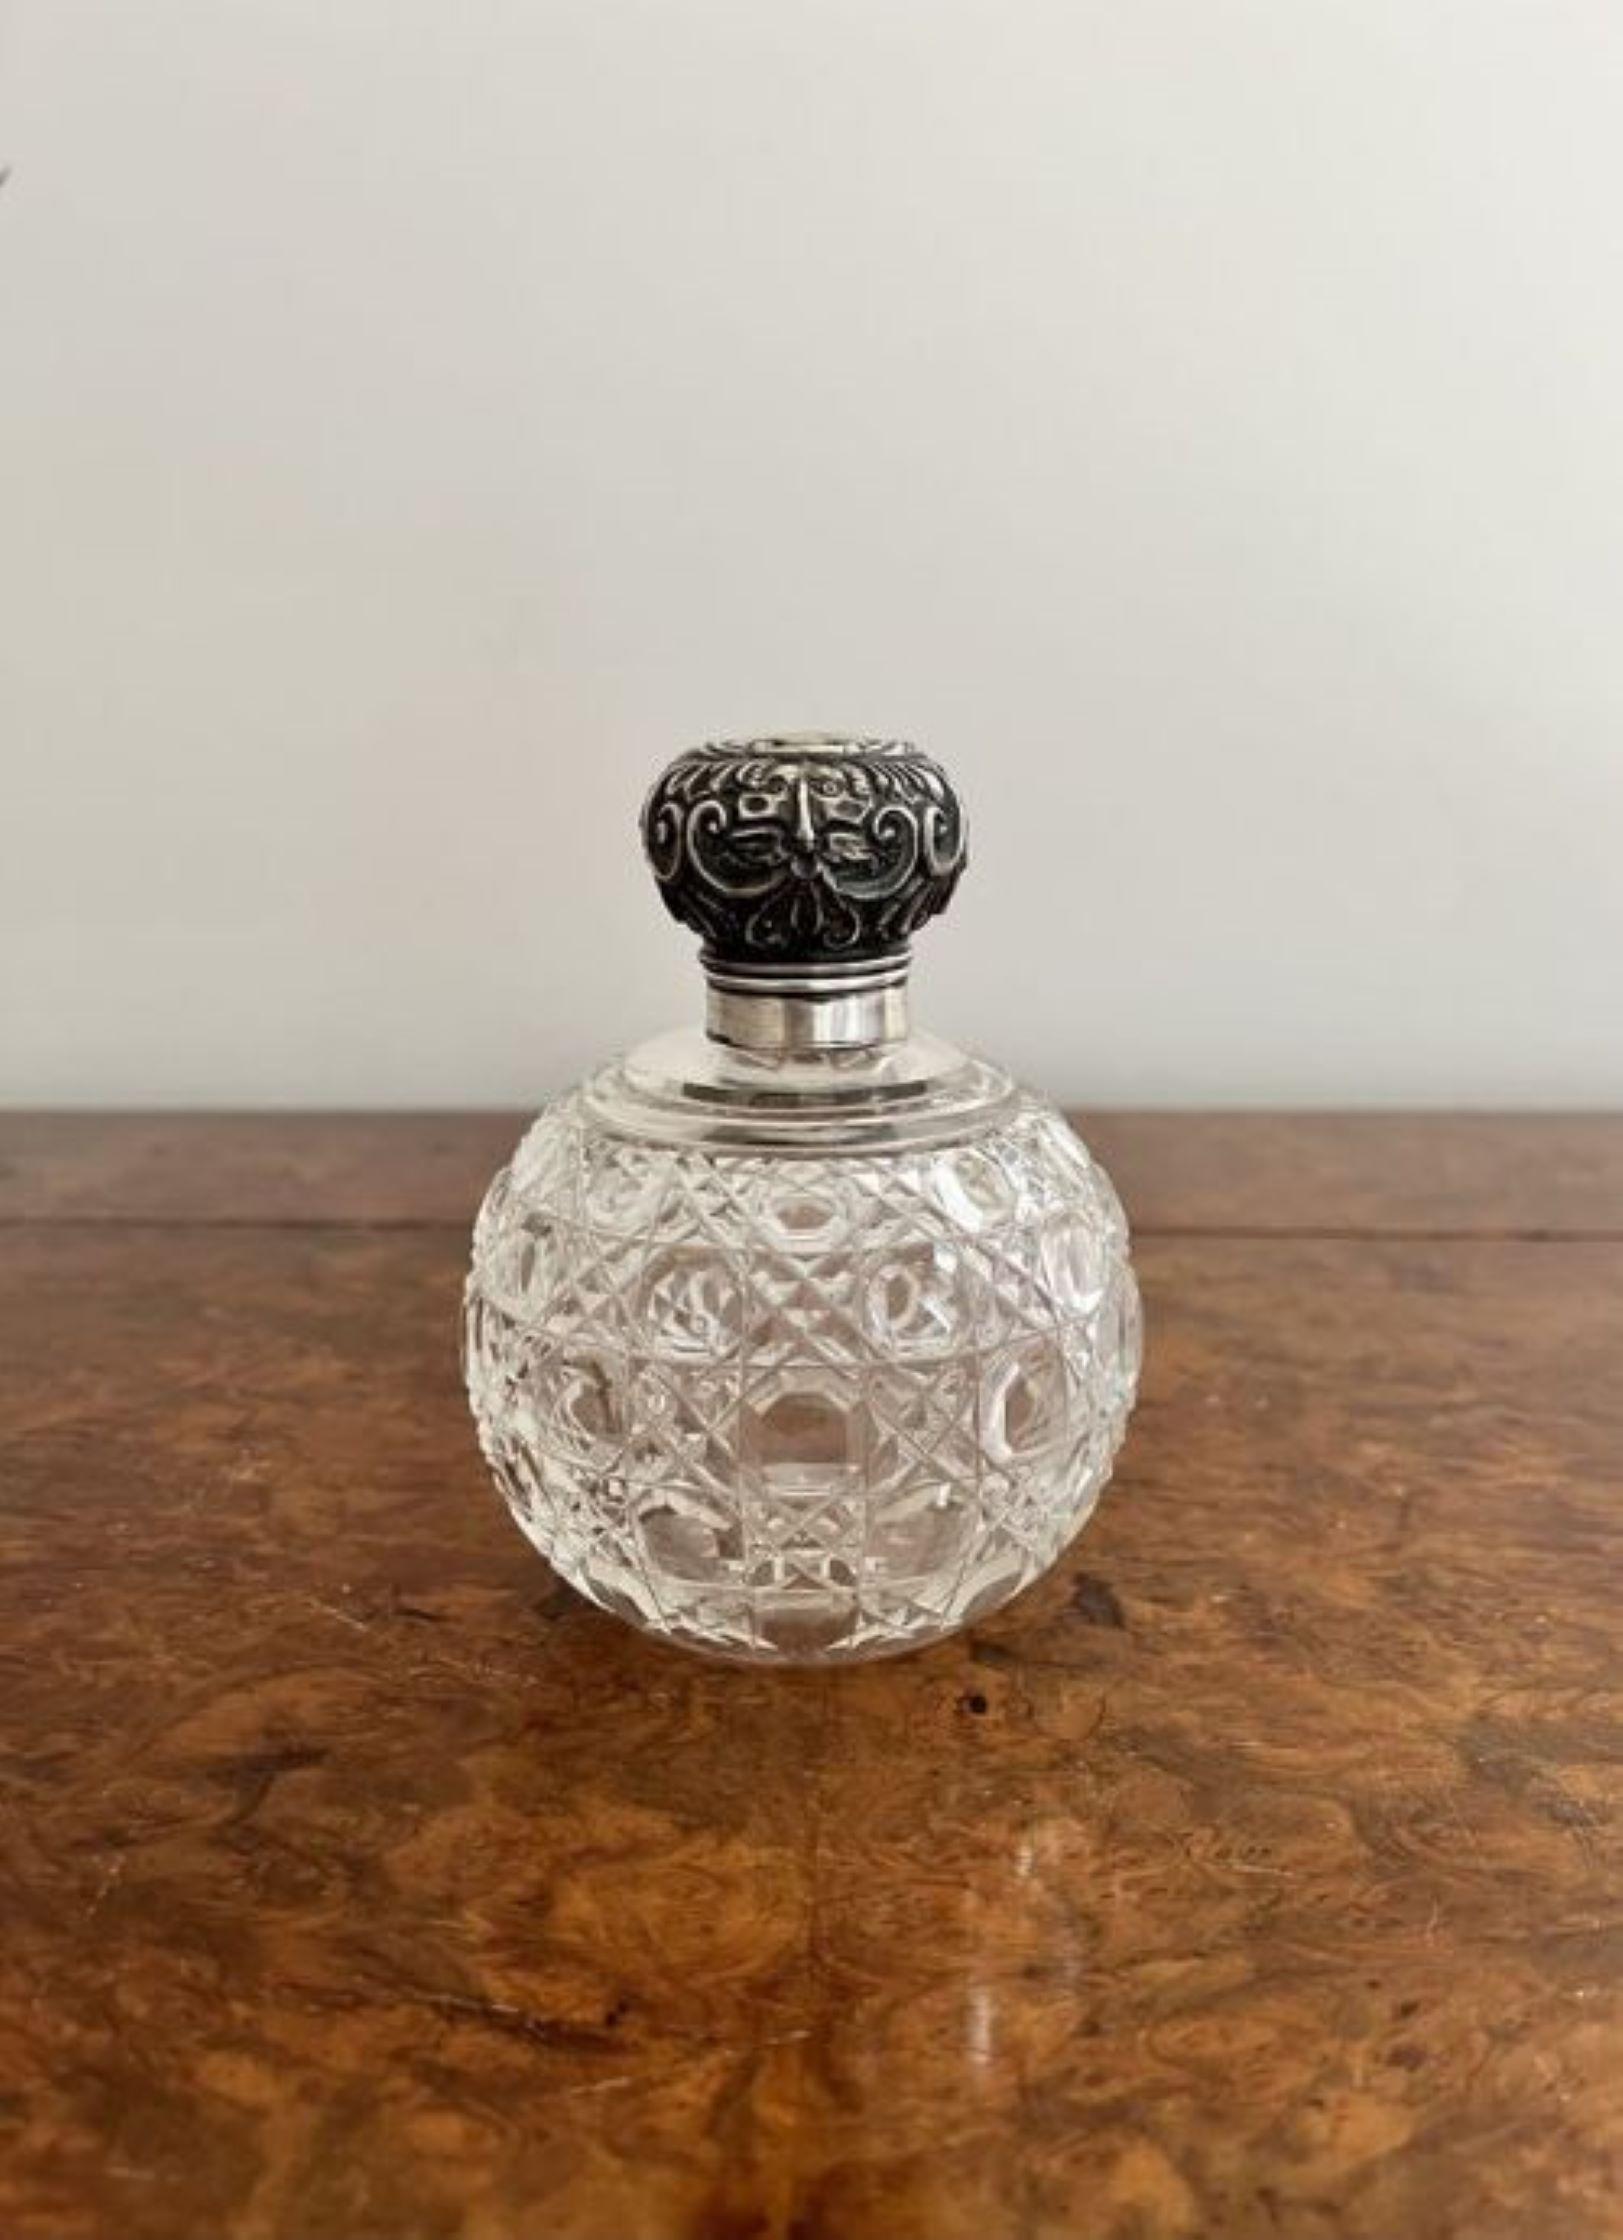 Flacon à parfum de qualité, monté en argent, de l'époque victorienne, avec un corps circulaire en verre taillé et un couvercle en argent orné.